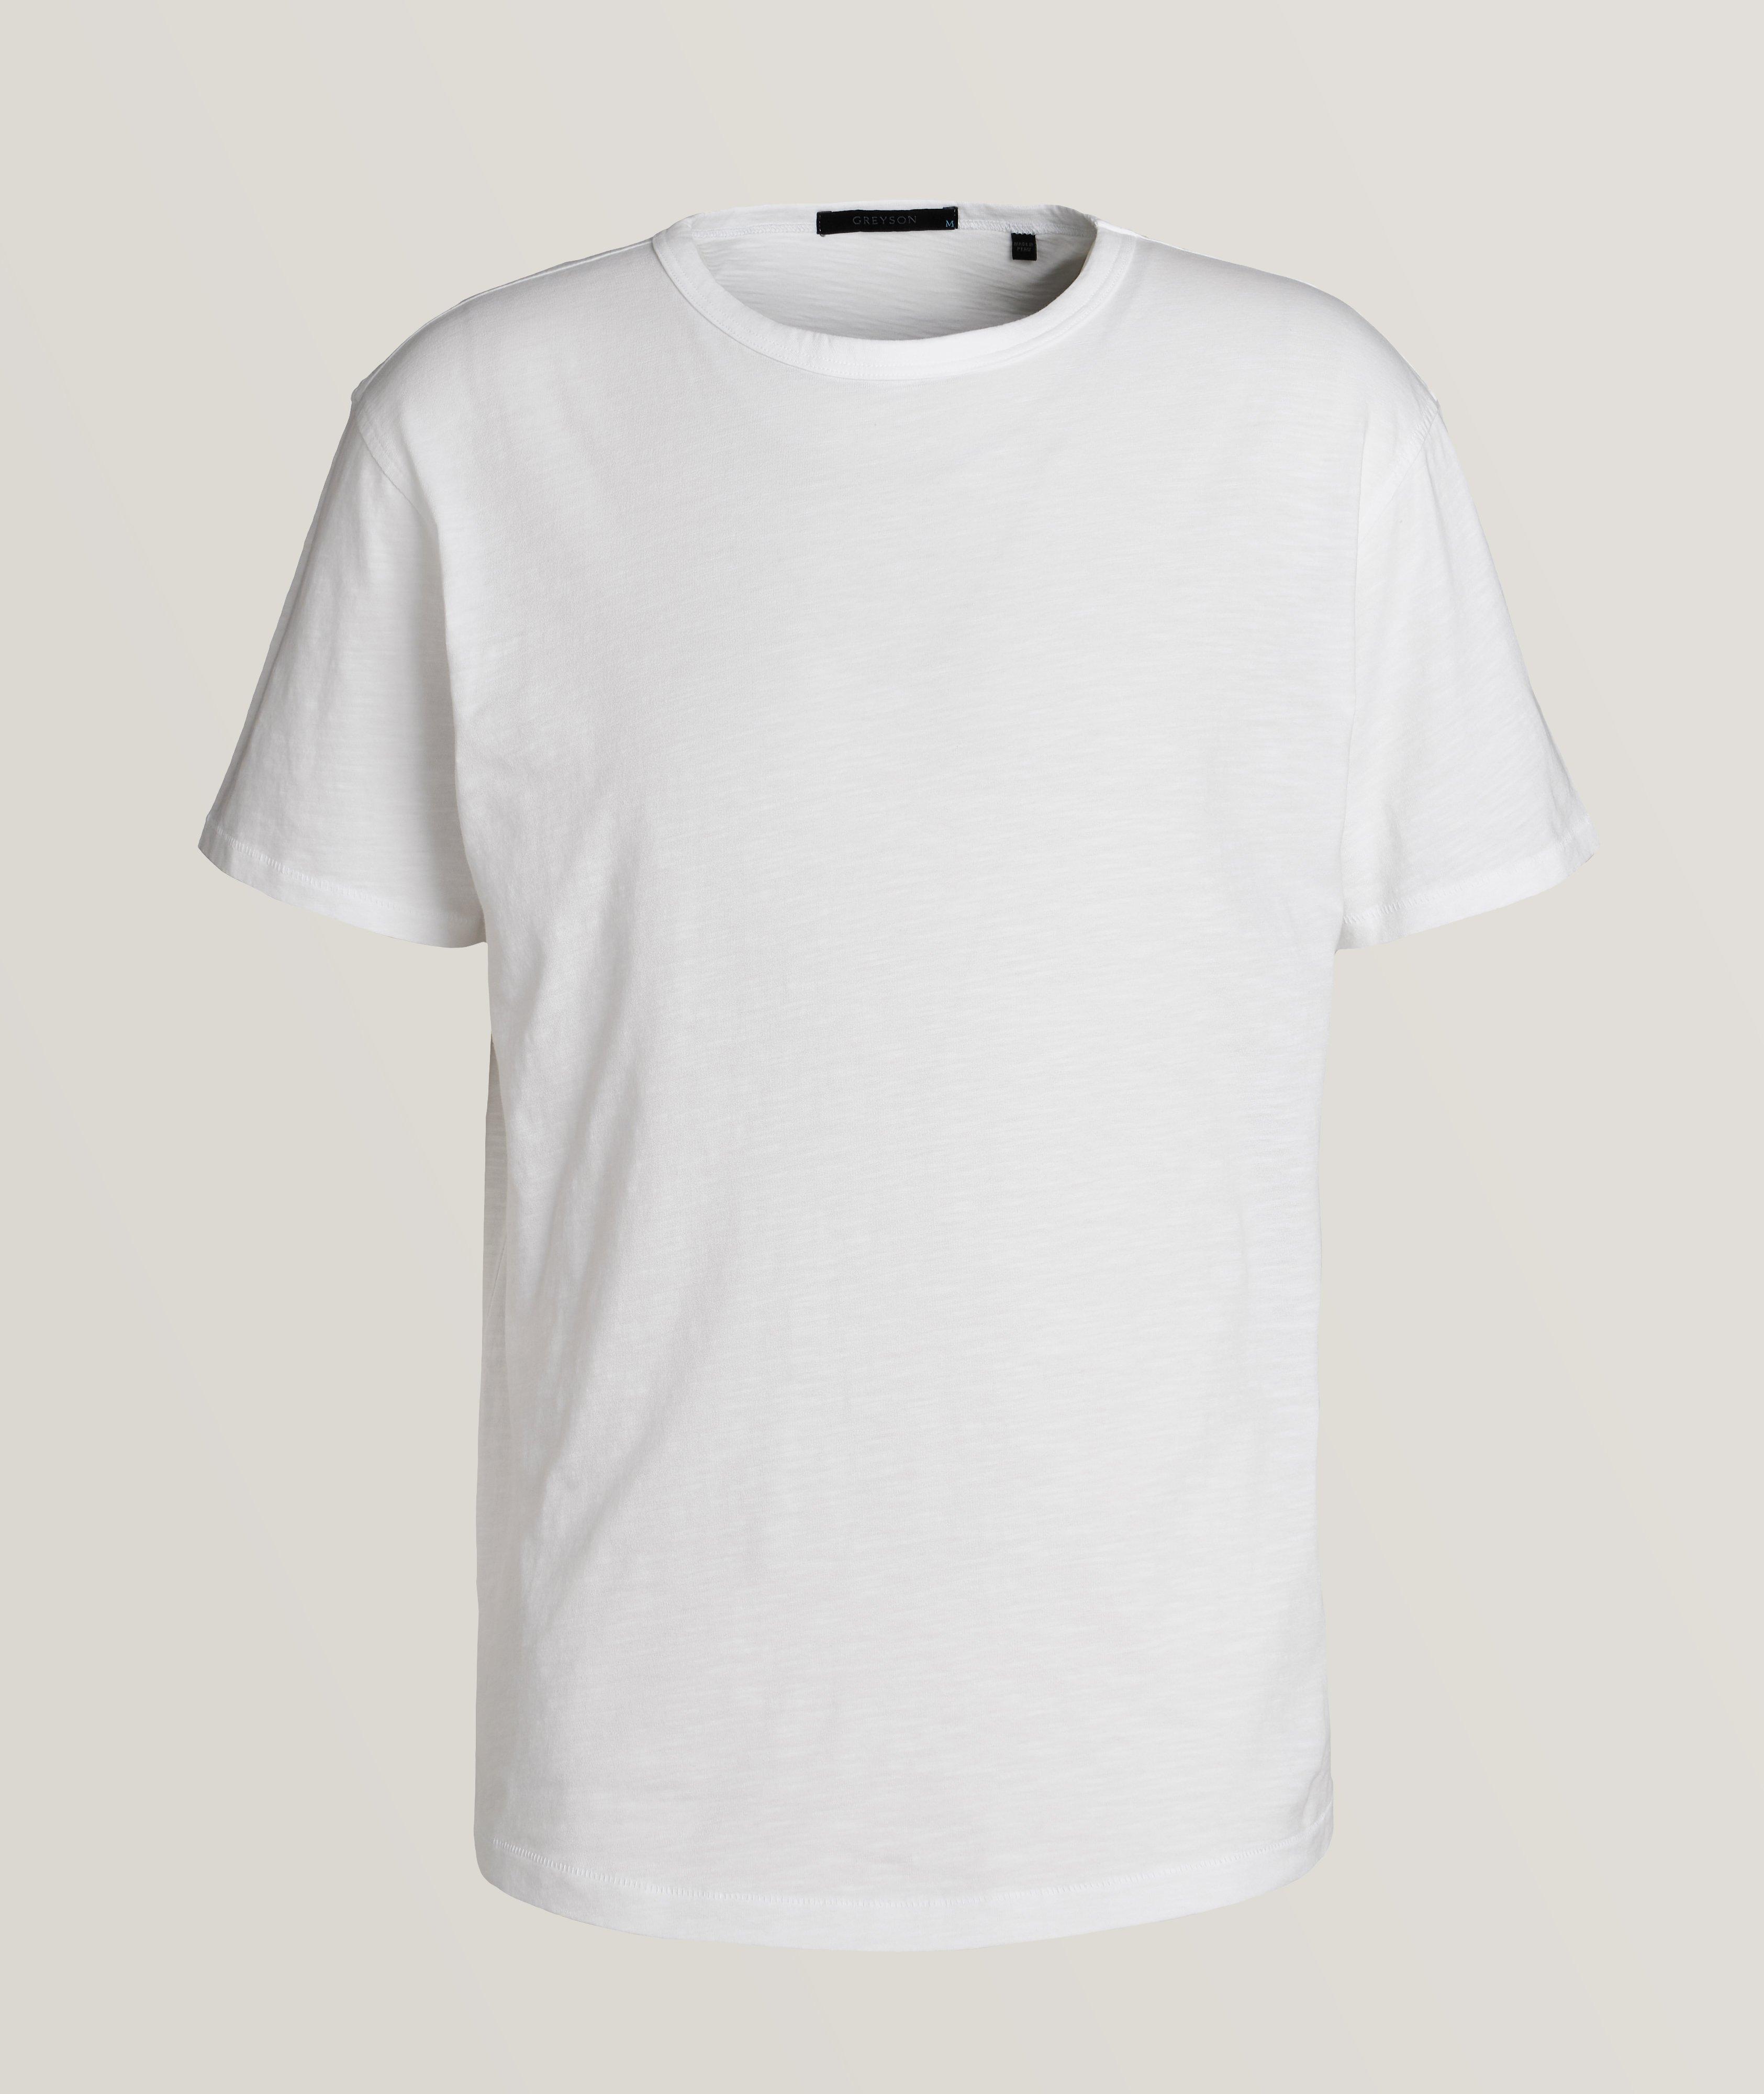 Athletic Cotton Crewneck T-Shirt image 0